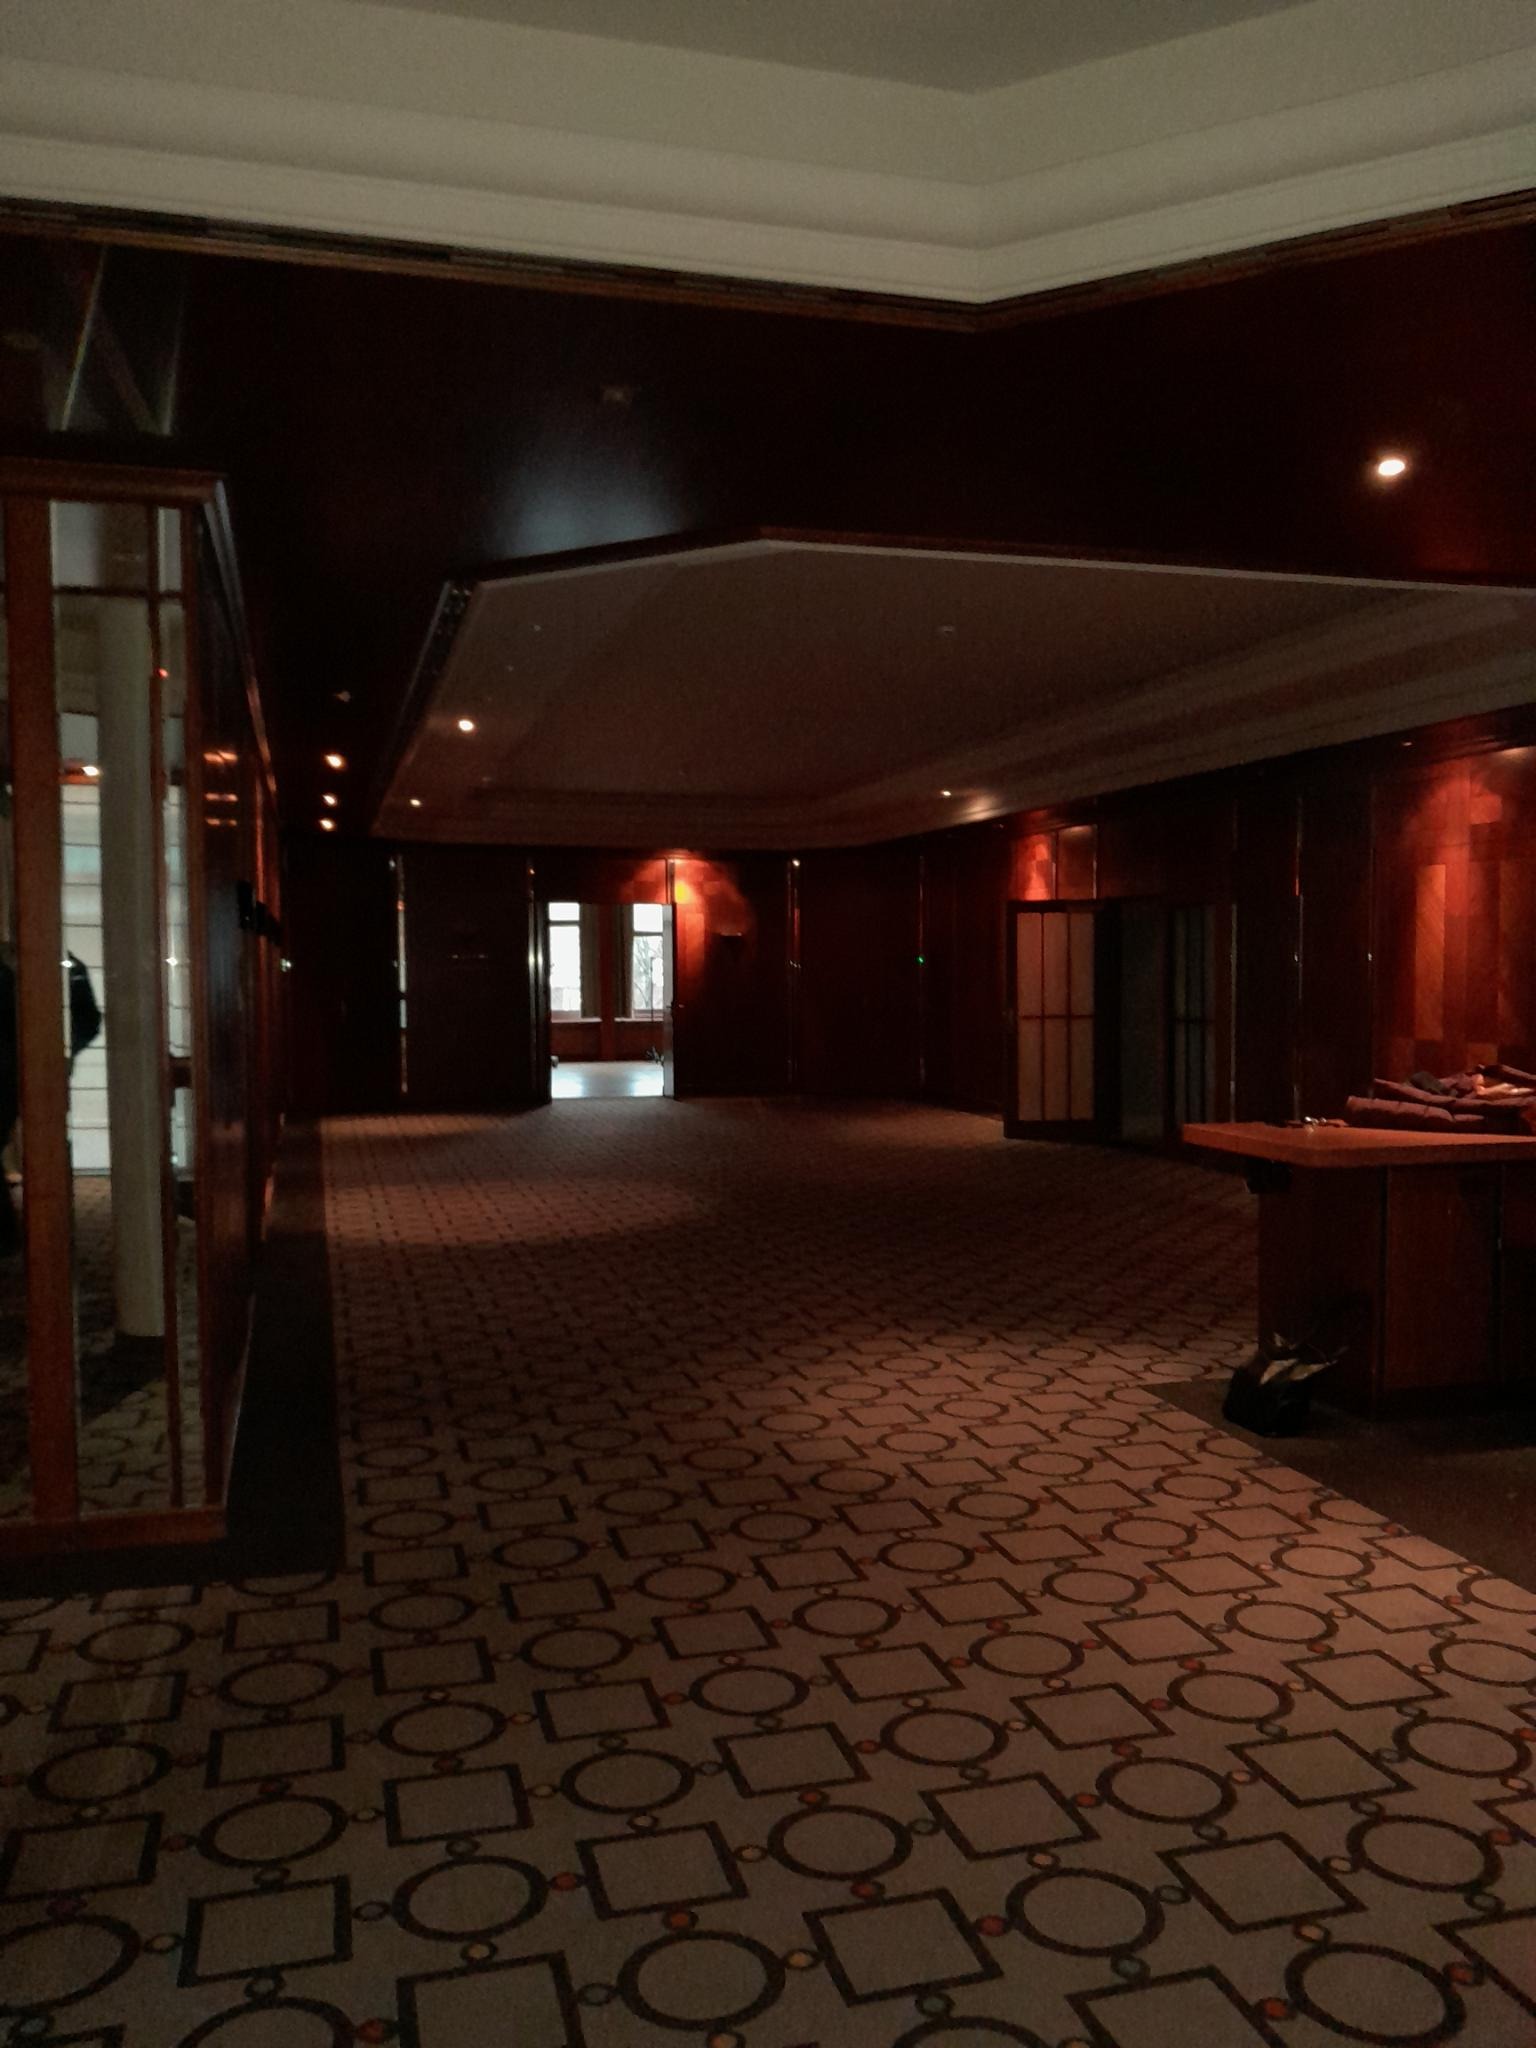 The Shining | Filmvorführung im verlassenen Luxushotel | Foto: Super7